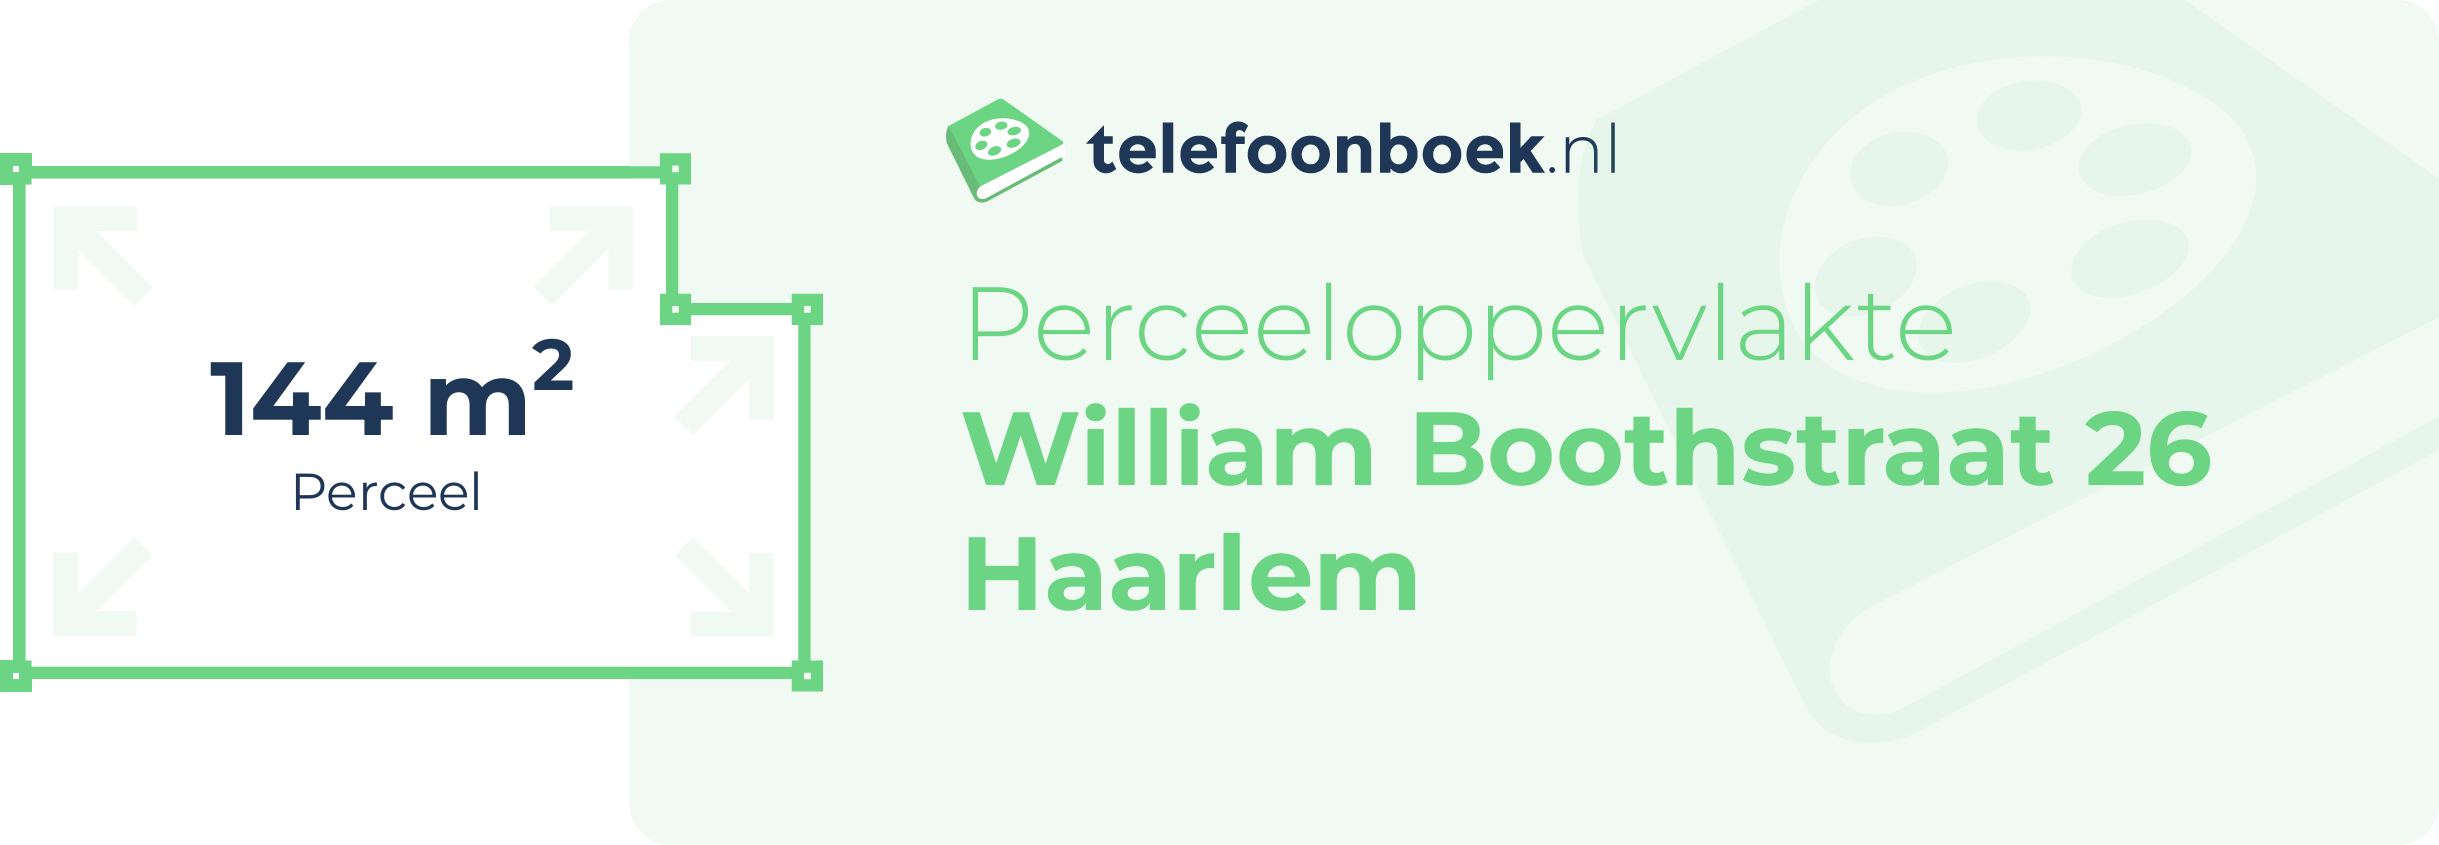 Perceeloppervlakte William Boothstraat 26 Haarlem